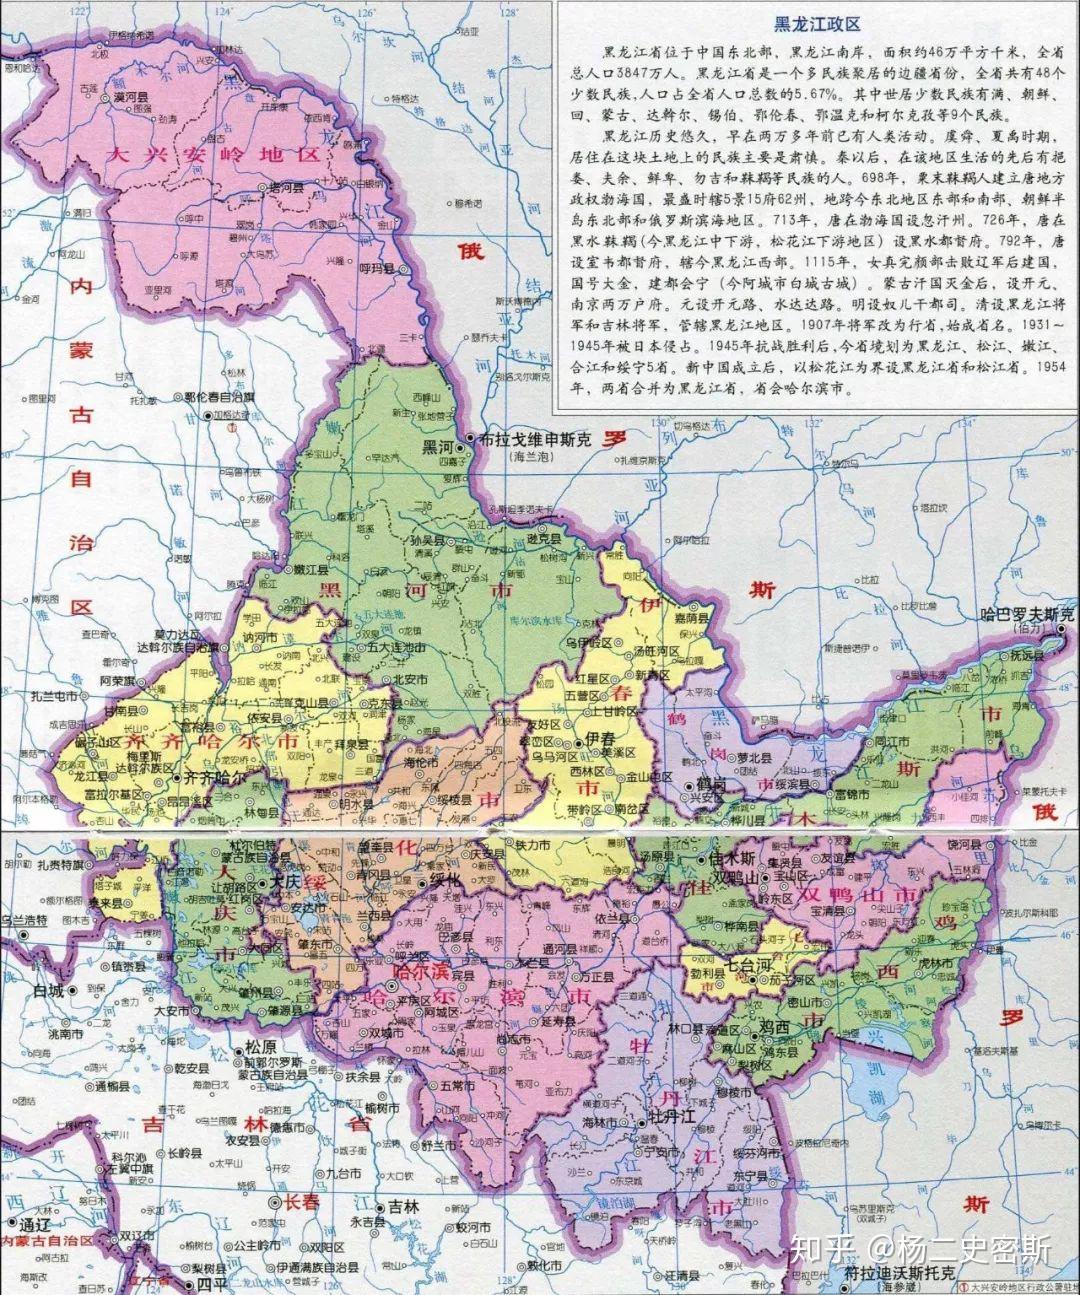 加格达奇虽然地盘归内蒙,但属黑龙江管辖,是黑龙江的一块省外飞地